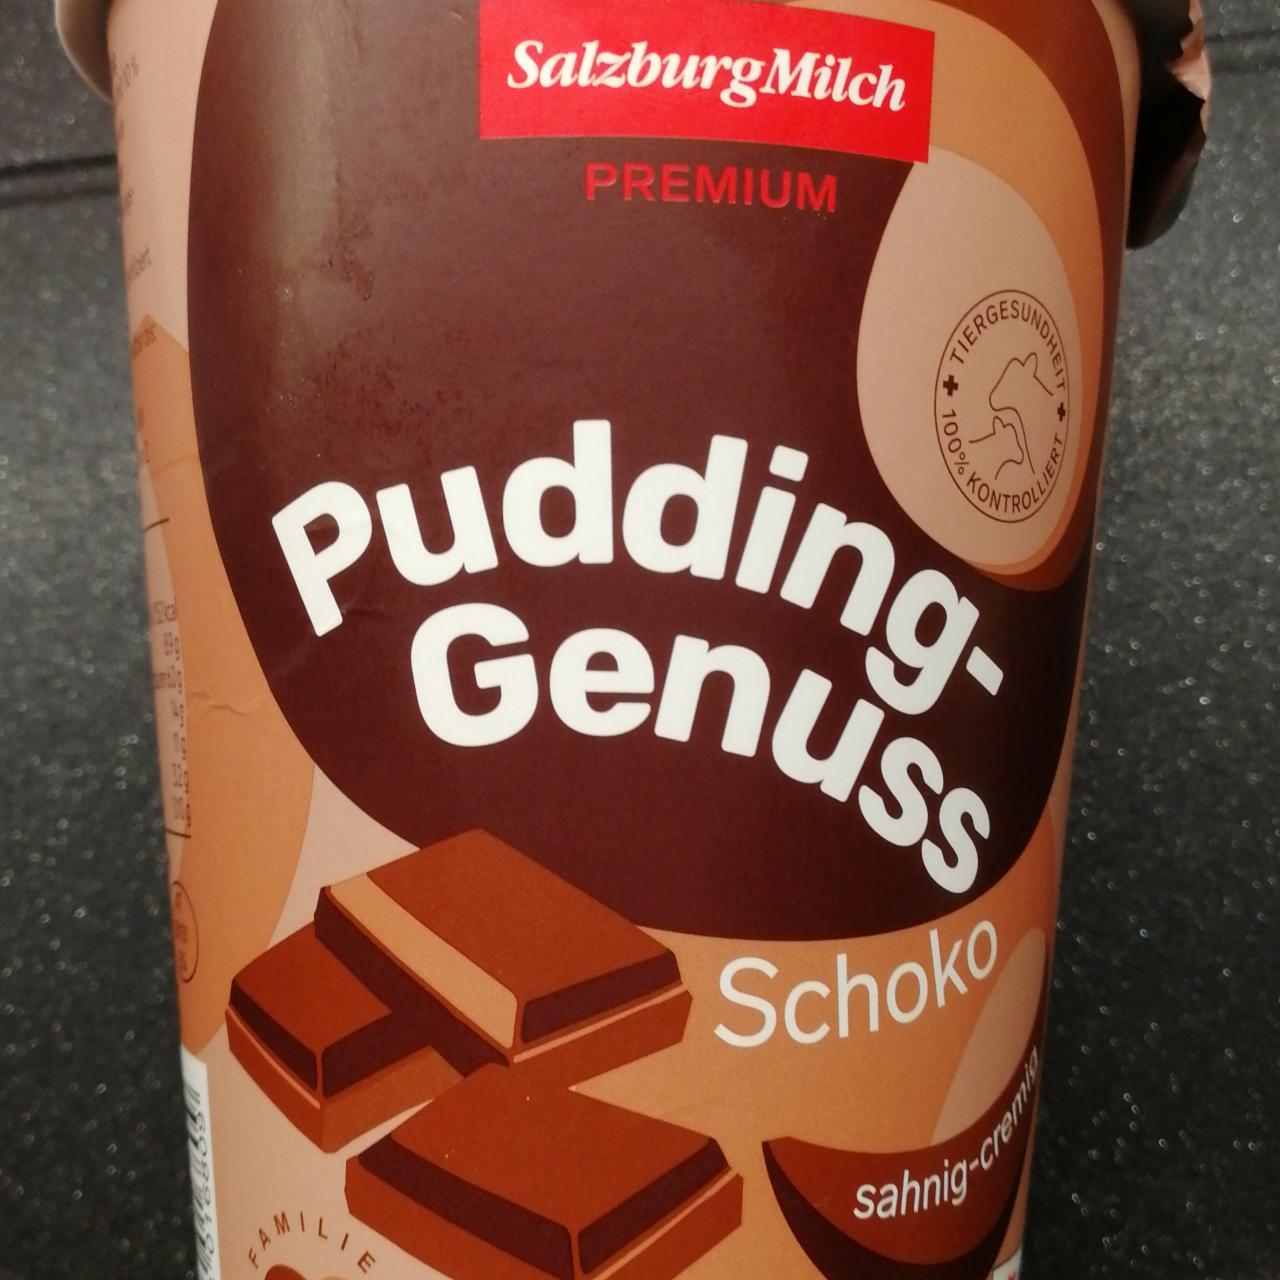 Fotografie - Pudding-Genuss Schoko SalzburgMilch